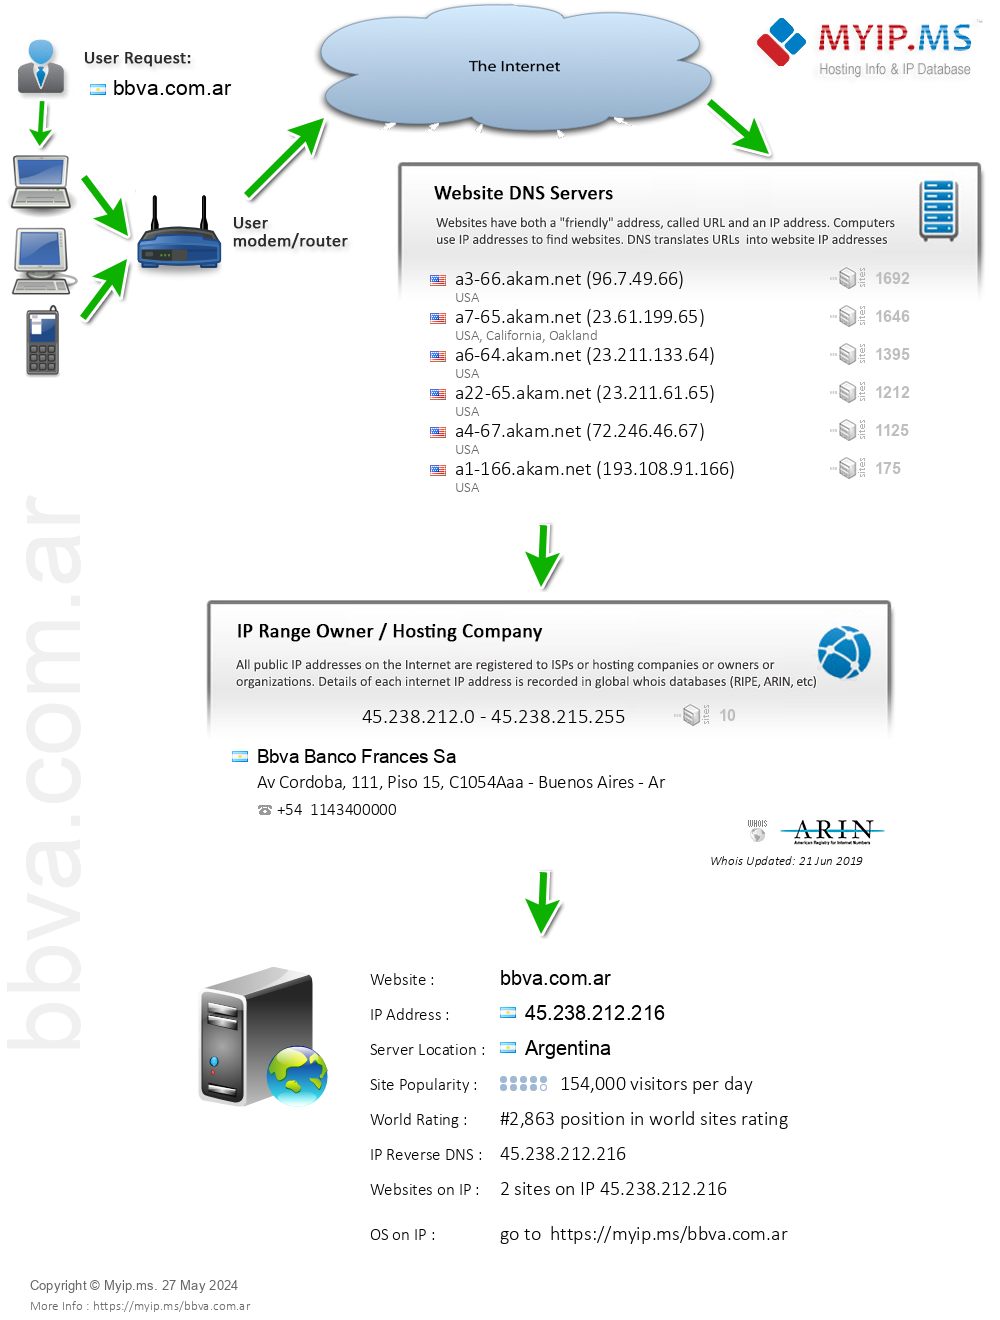 Bbva.com.ar - Website Hosting Visual IP Diagram